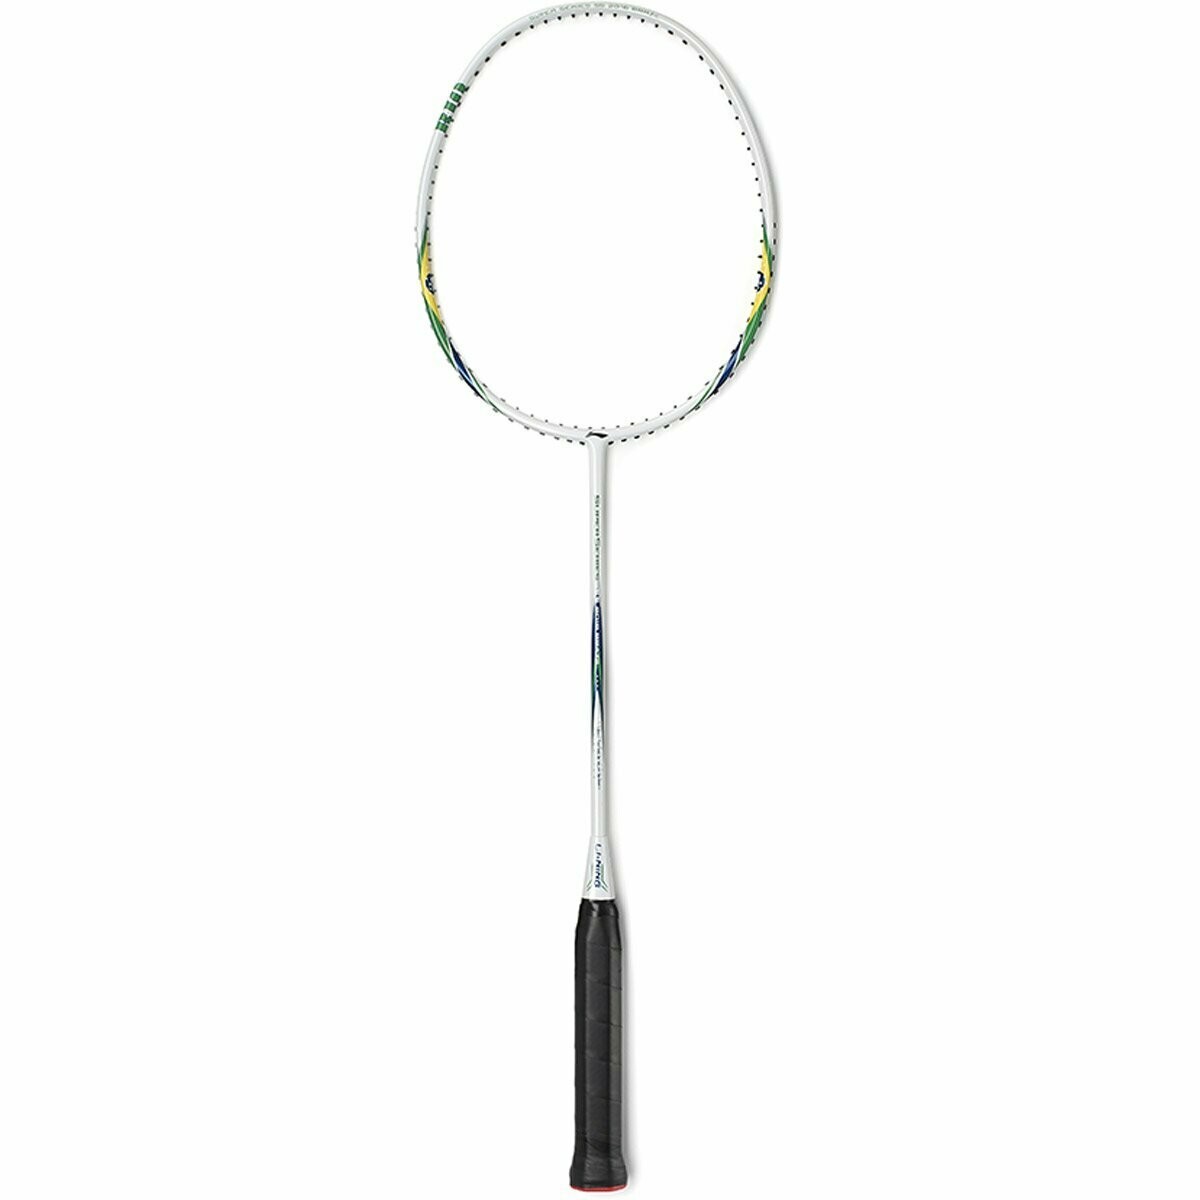 LI-NING Superseries 2012 England Blue Strung Badminton Racquet (Weight - 82 g)